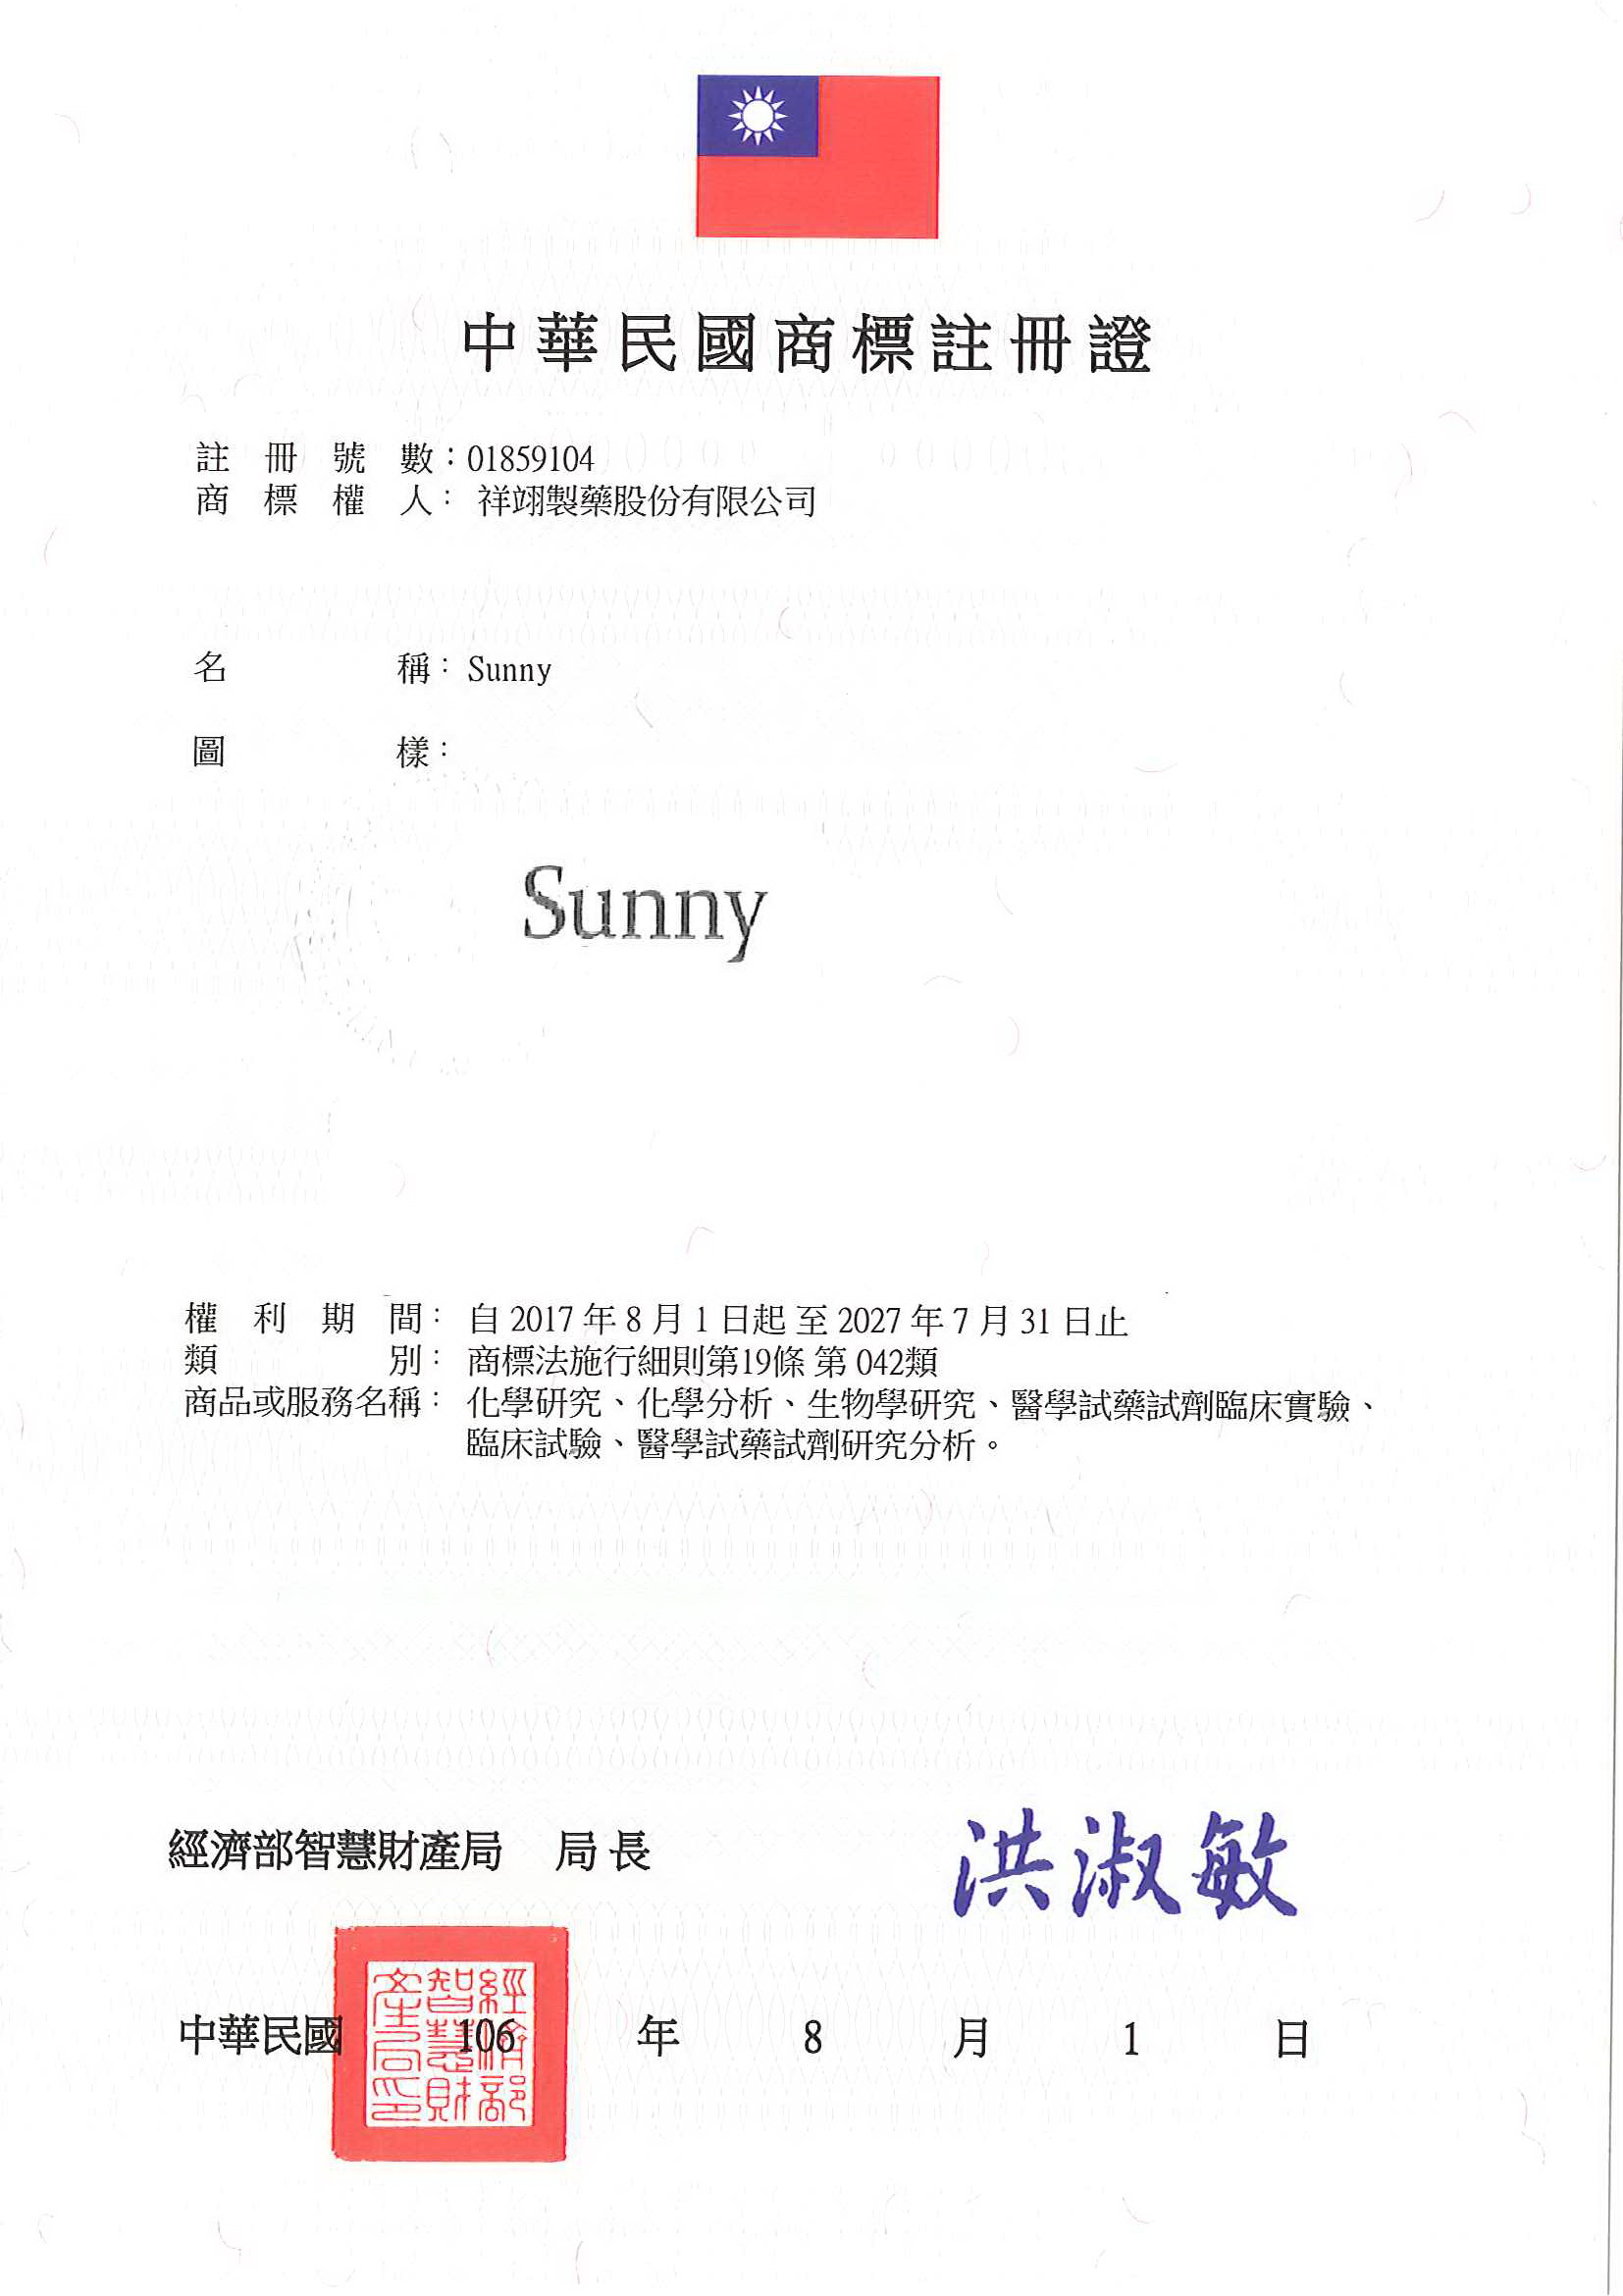 此為祥翊製藥Sunny圖樣中華民國商標註冊證